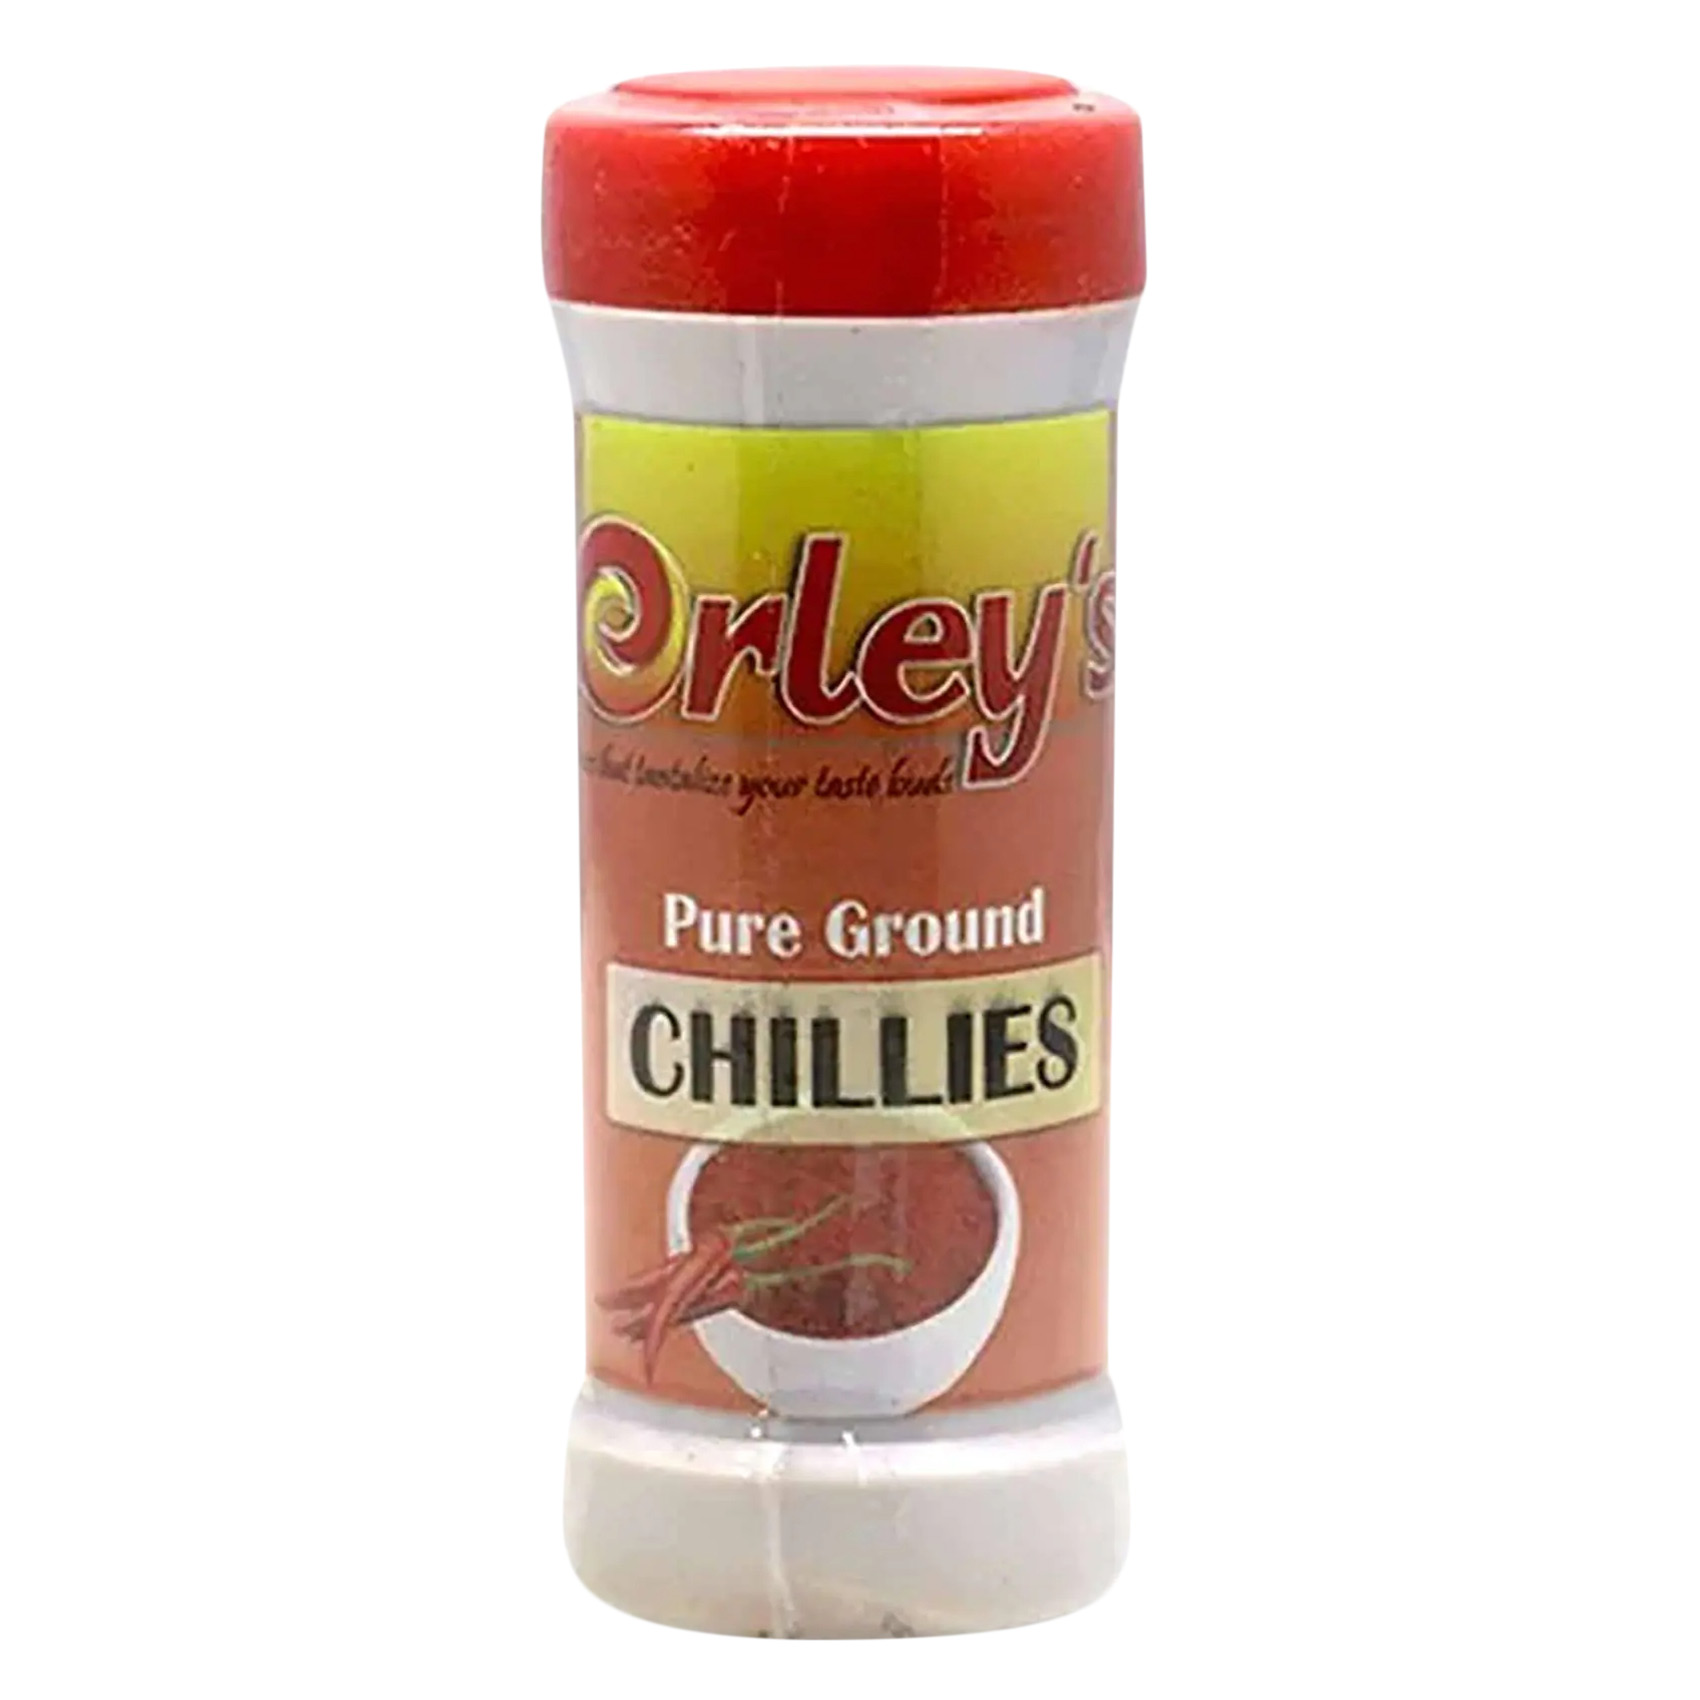 Orley&#39;s Spice Ground Chillies 100g